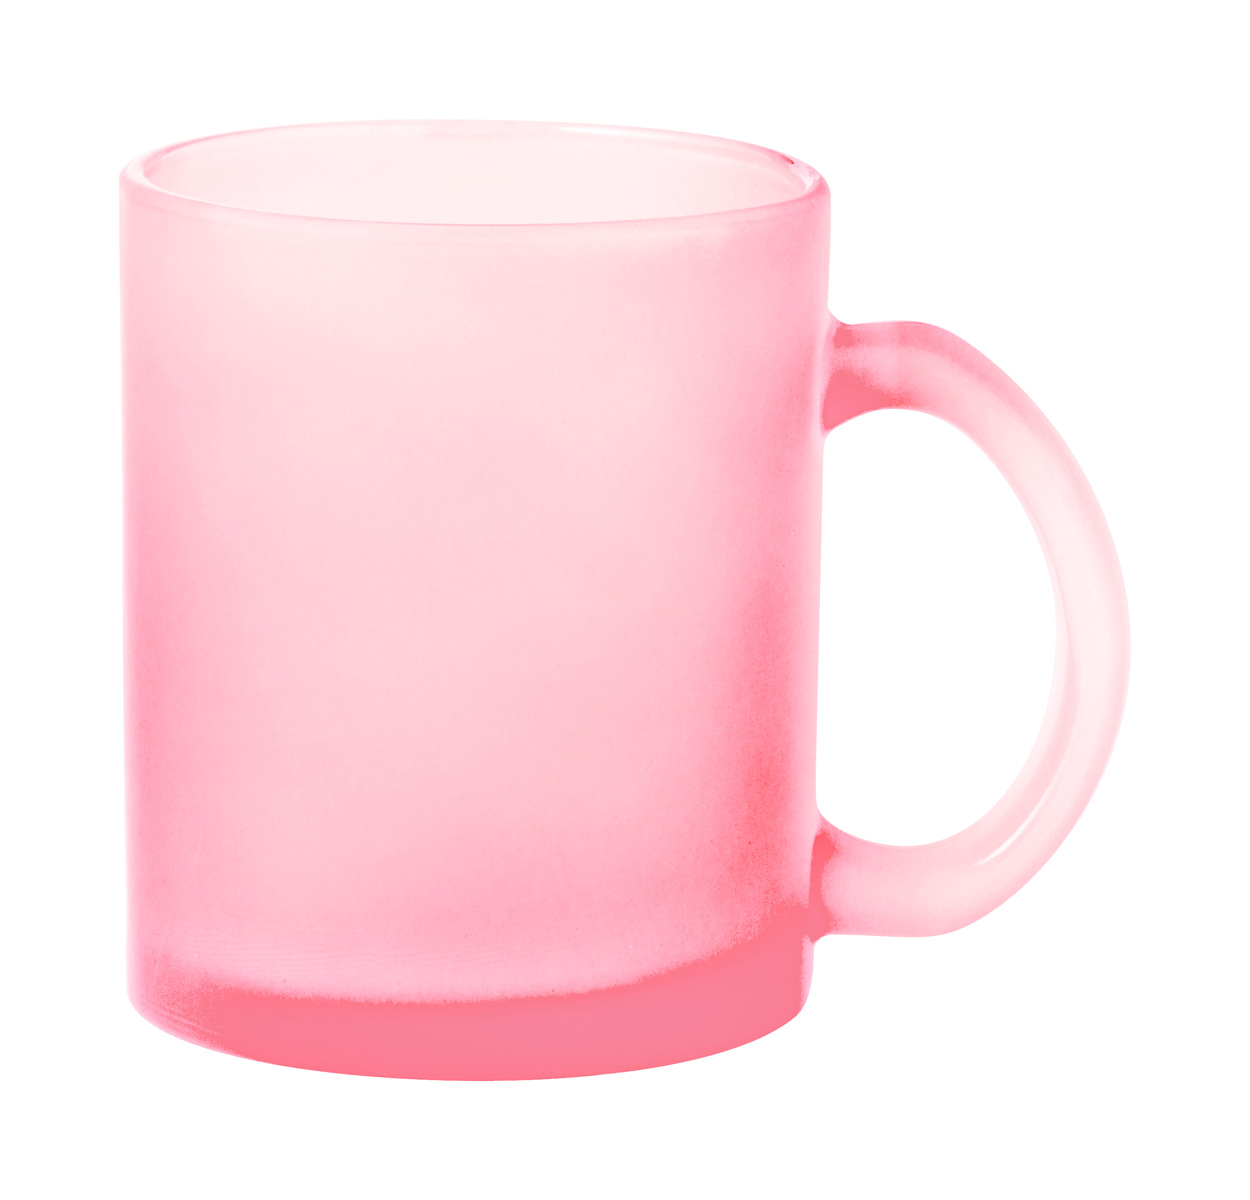 Cervan mug for sublimation - pink